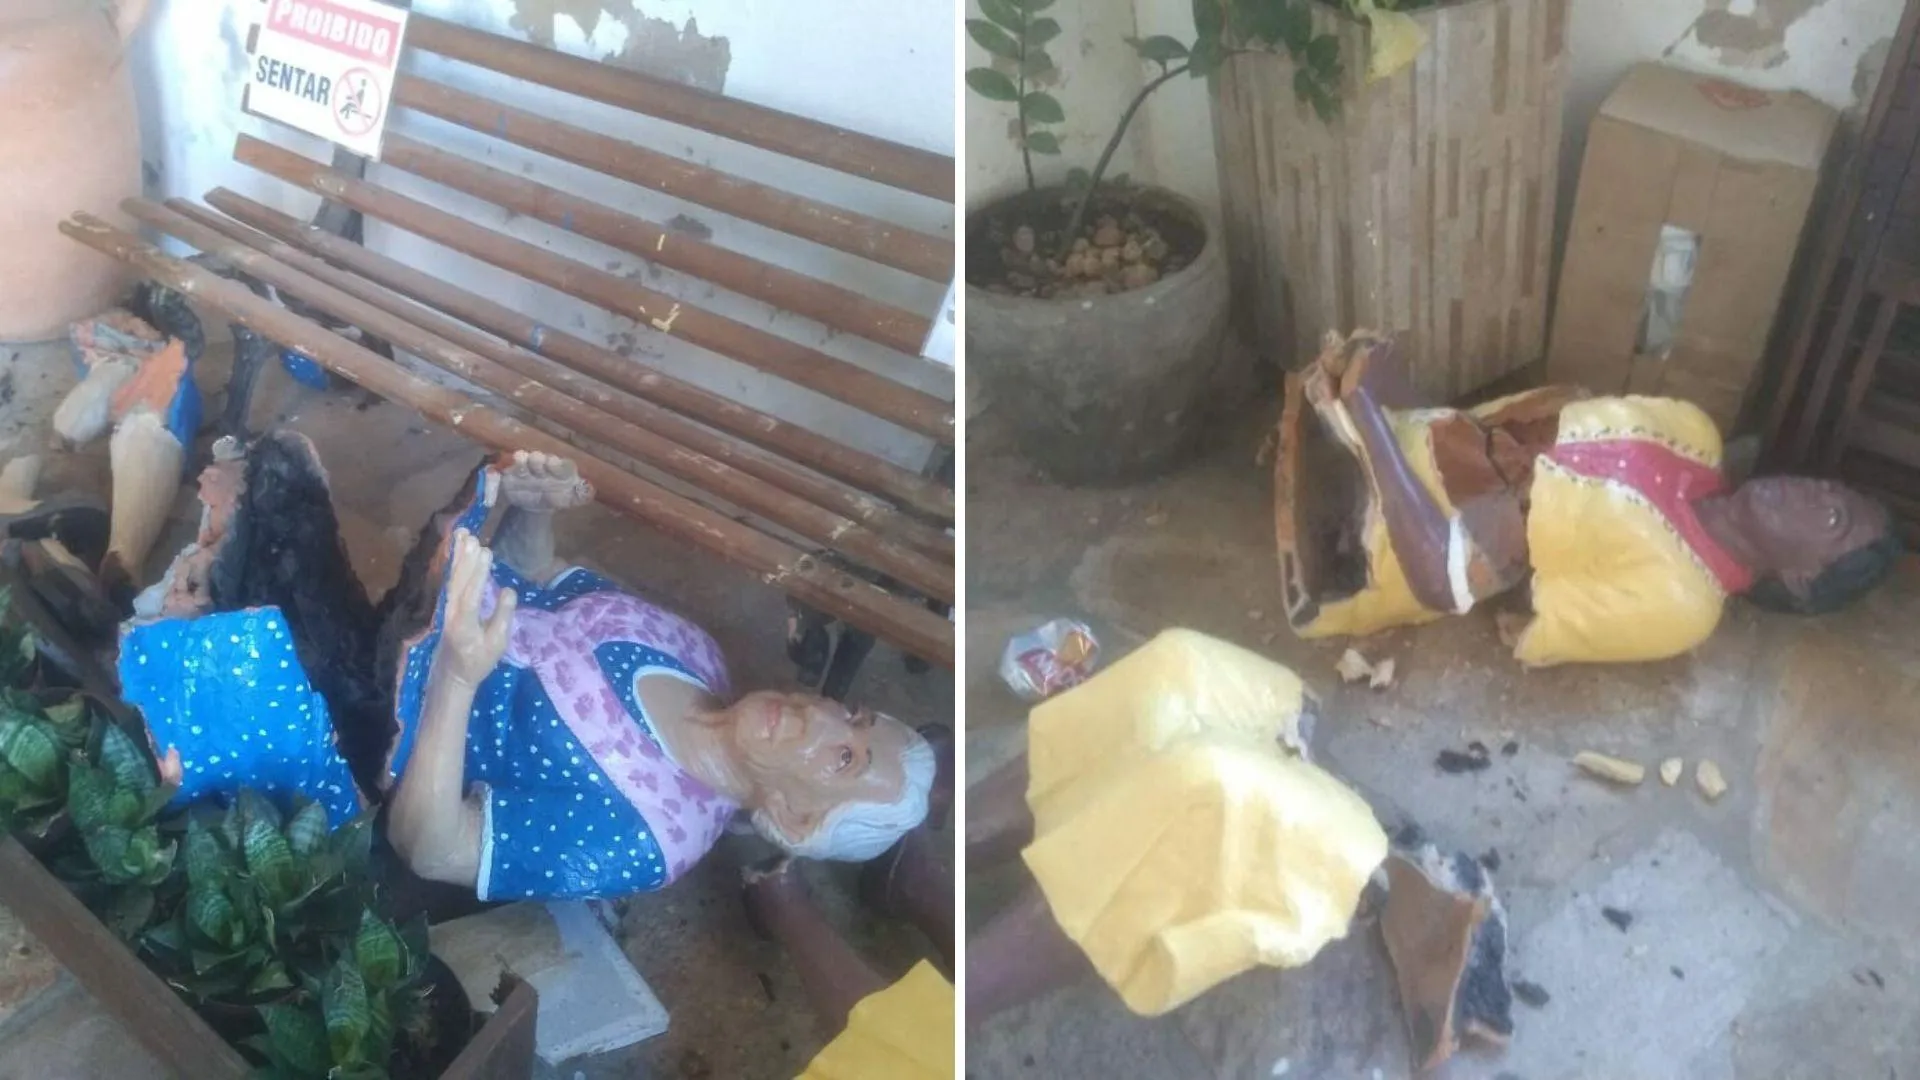 Dona de salão de beleza vandalizado por casal nu desabafa sobre prejuízos:  'Me deu desespero', Goiás